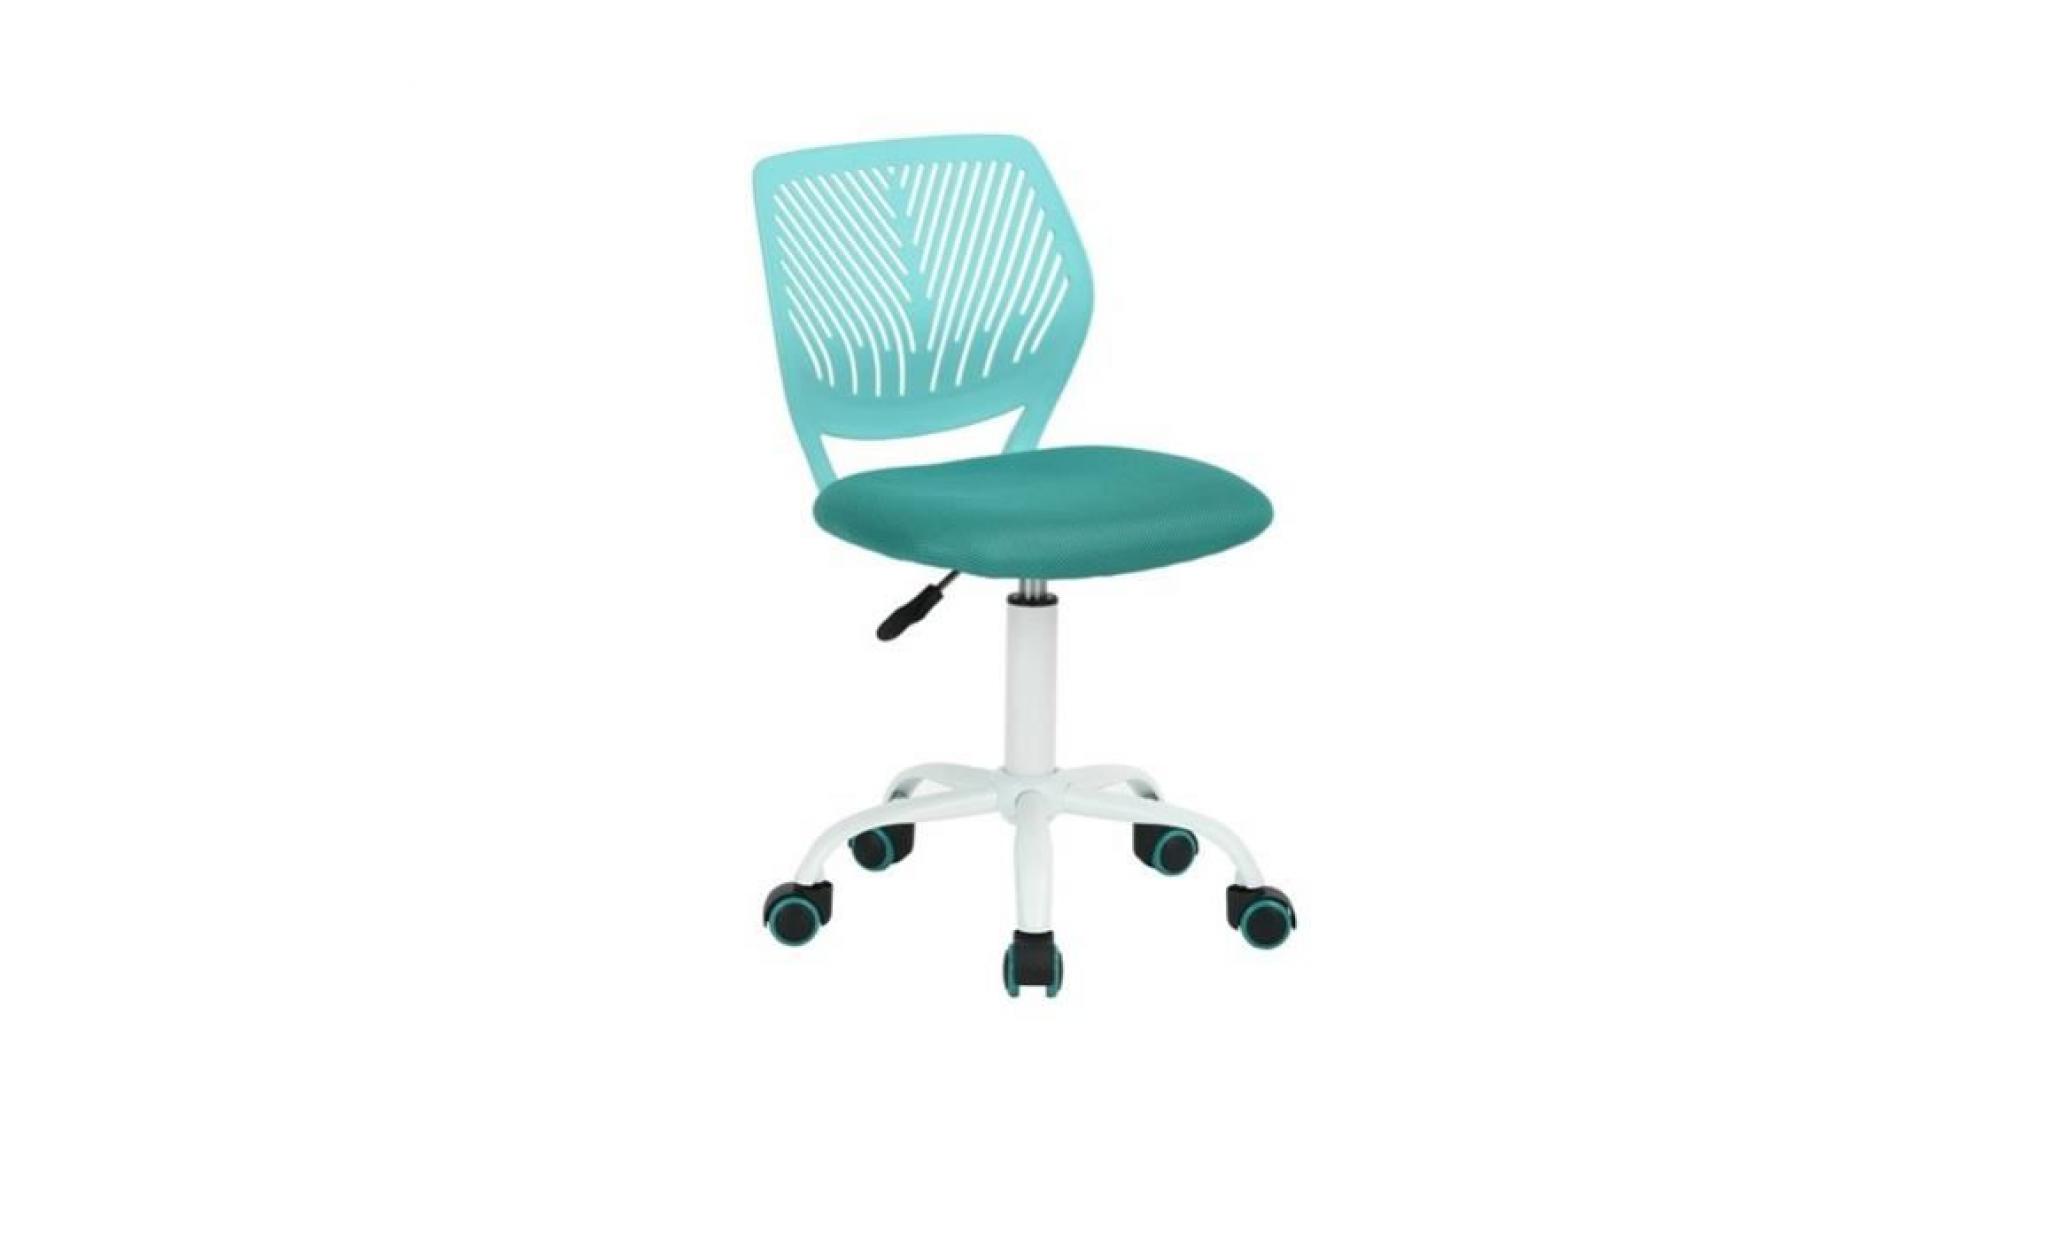 carna chaise de bureau   tissu maille turquoise   style contemporain   l 40 x p 44 cm